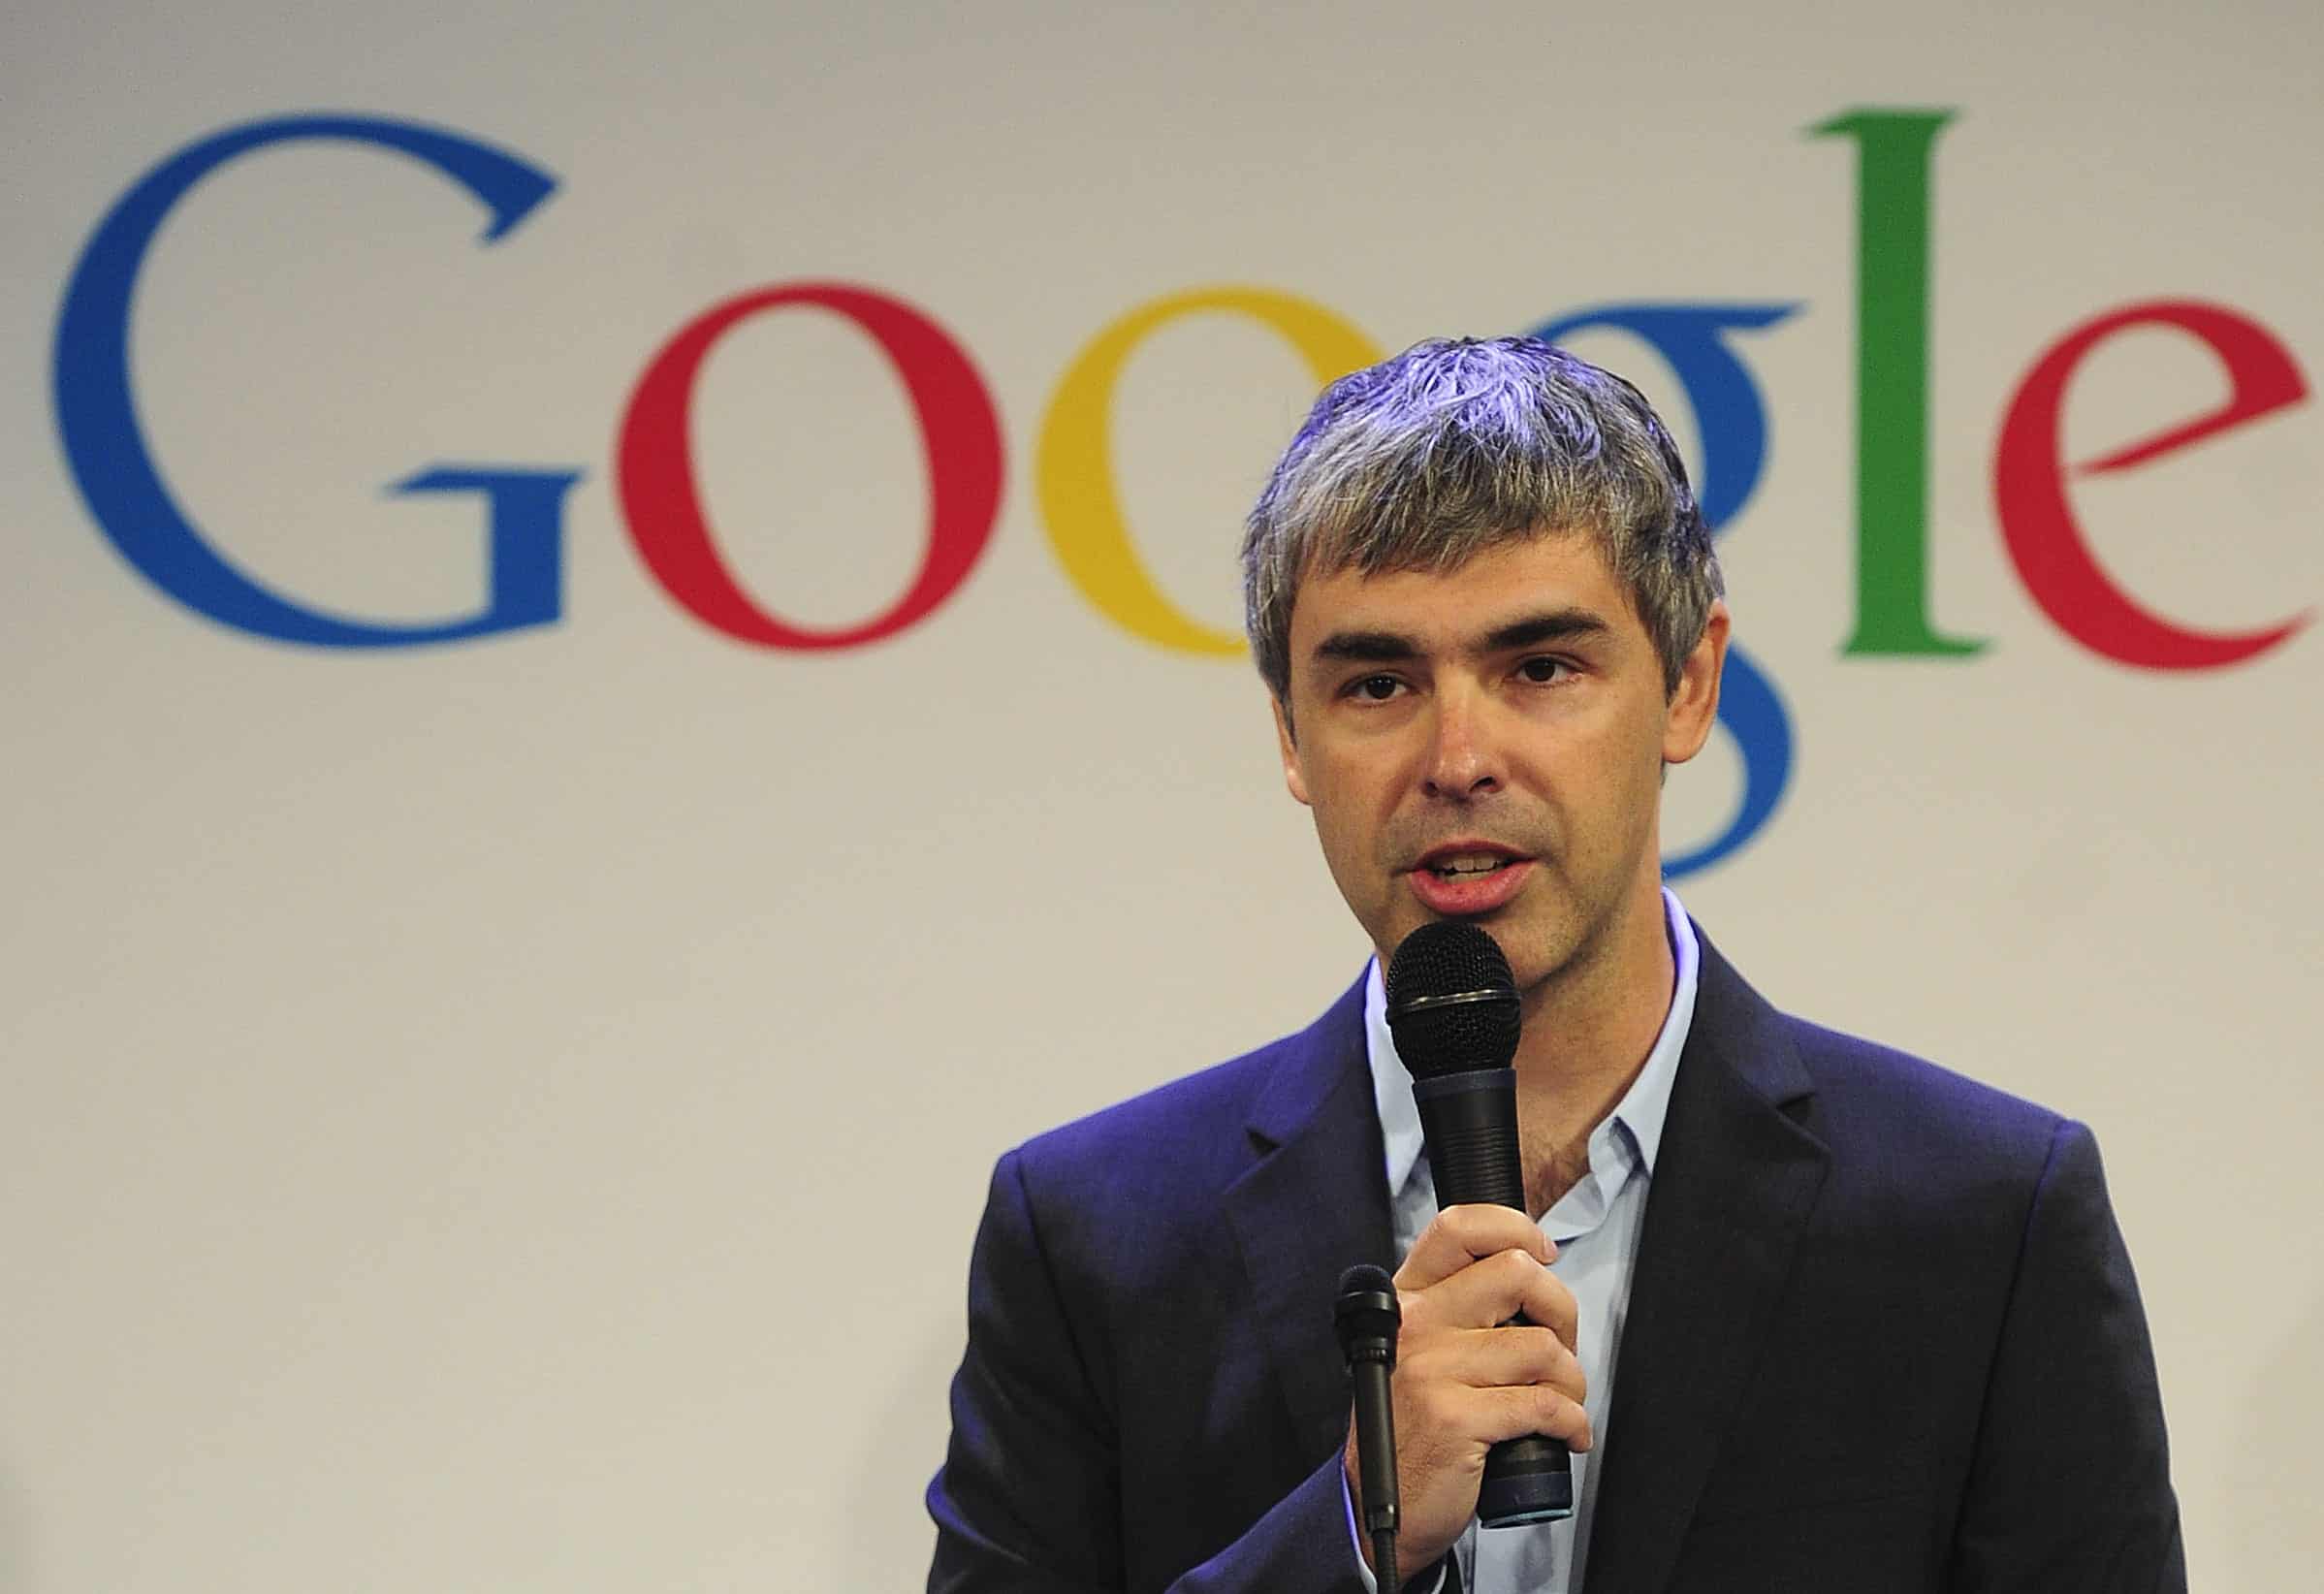 Larry Page conheça a história do cofundador do Google